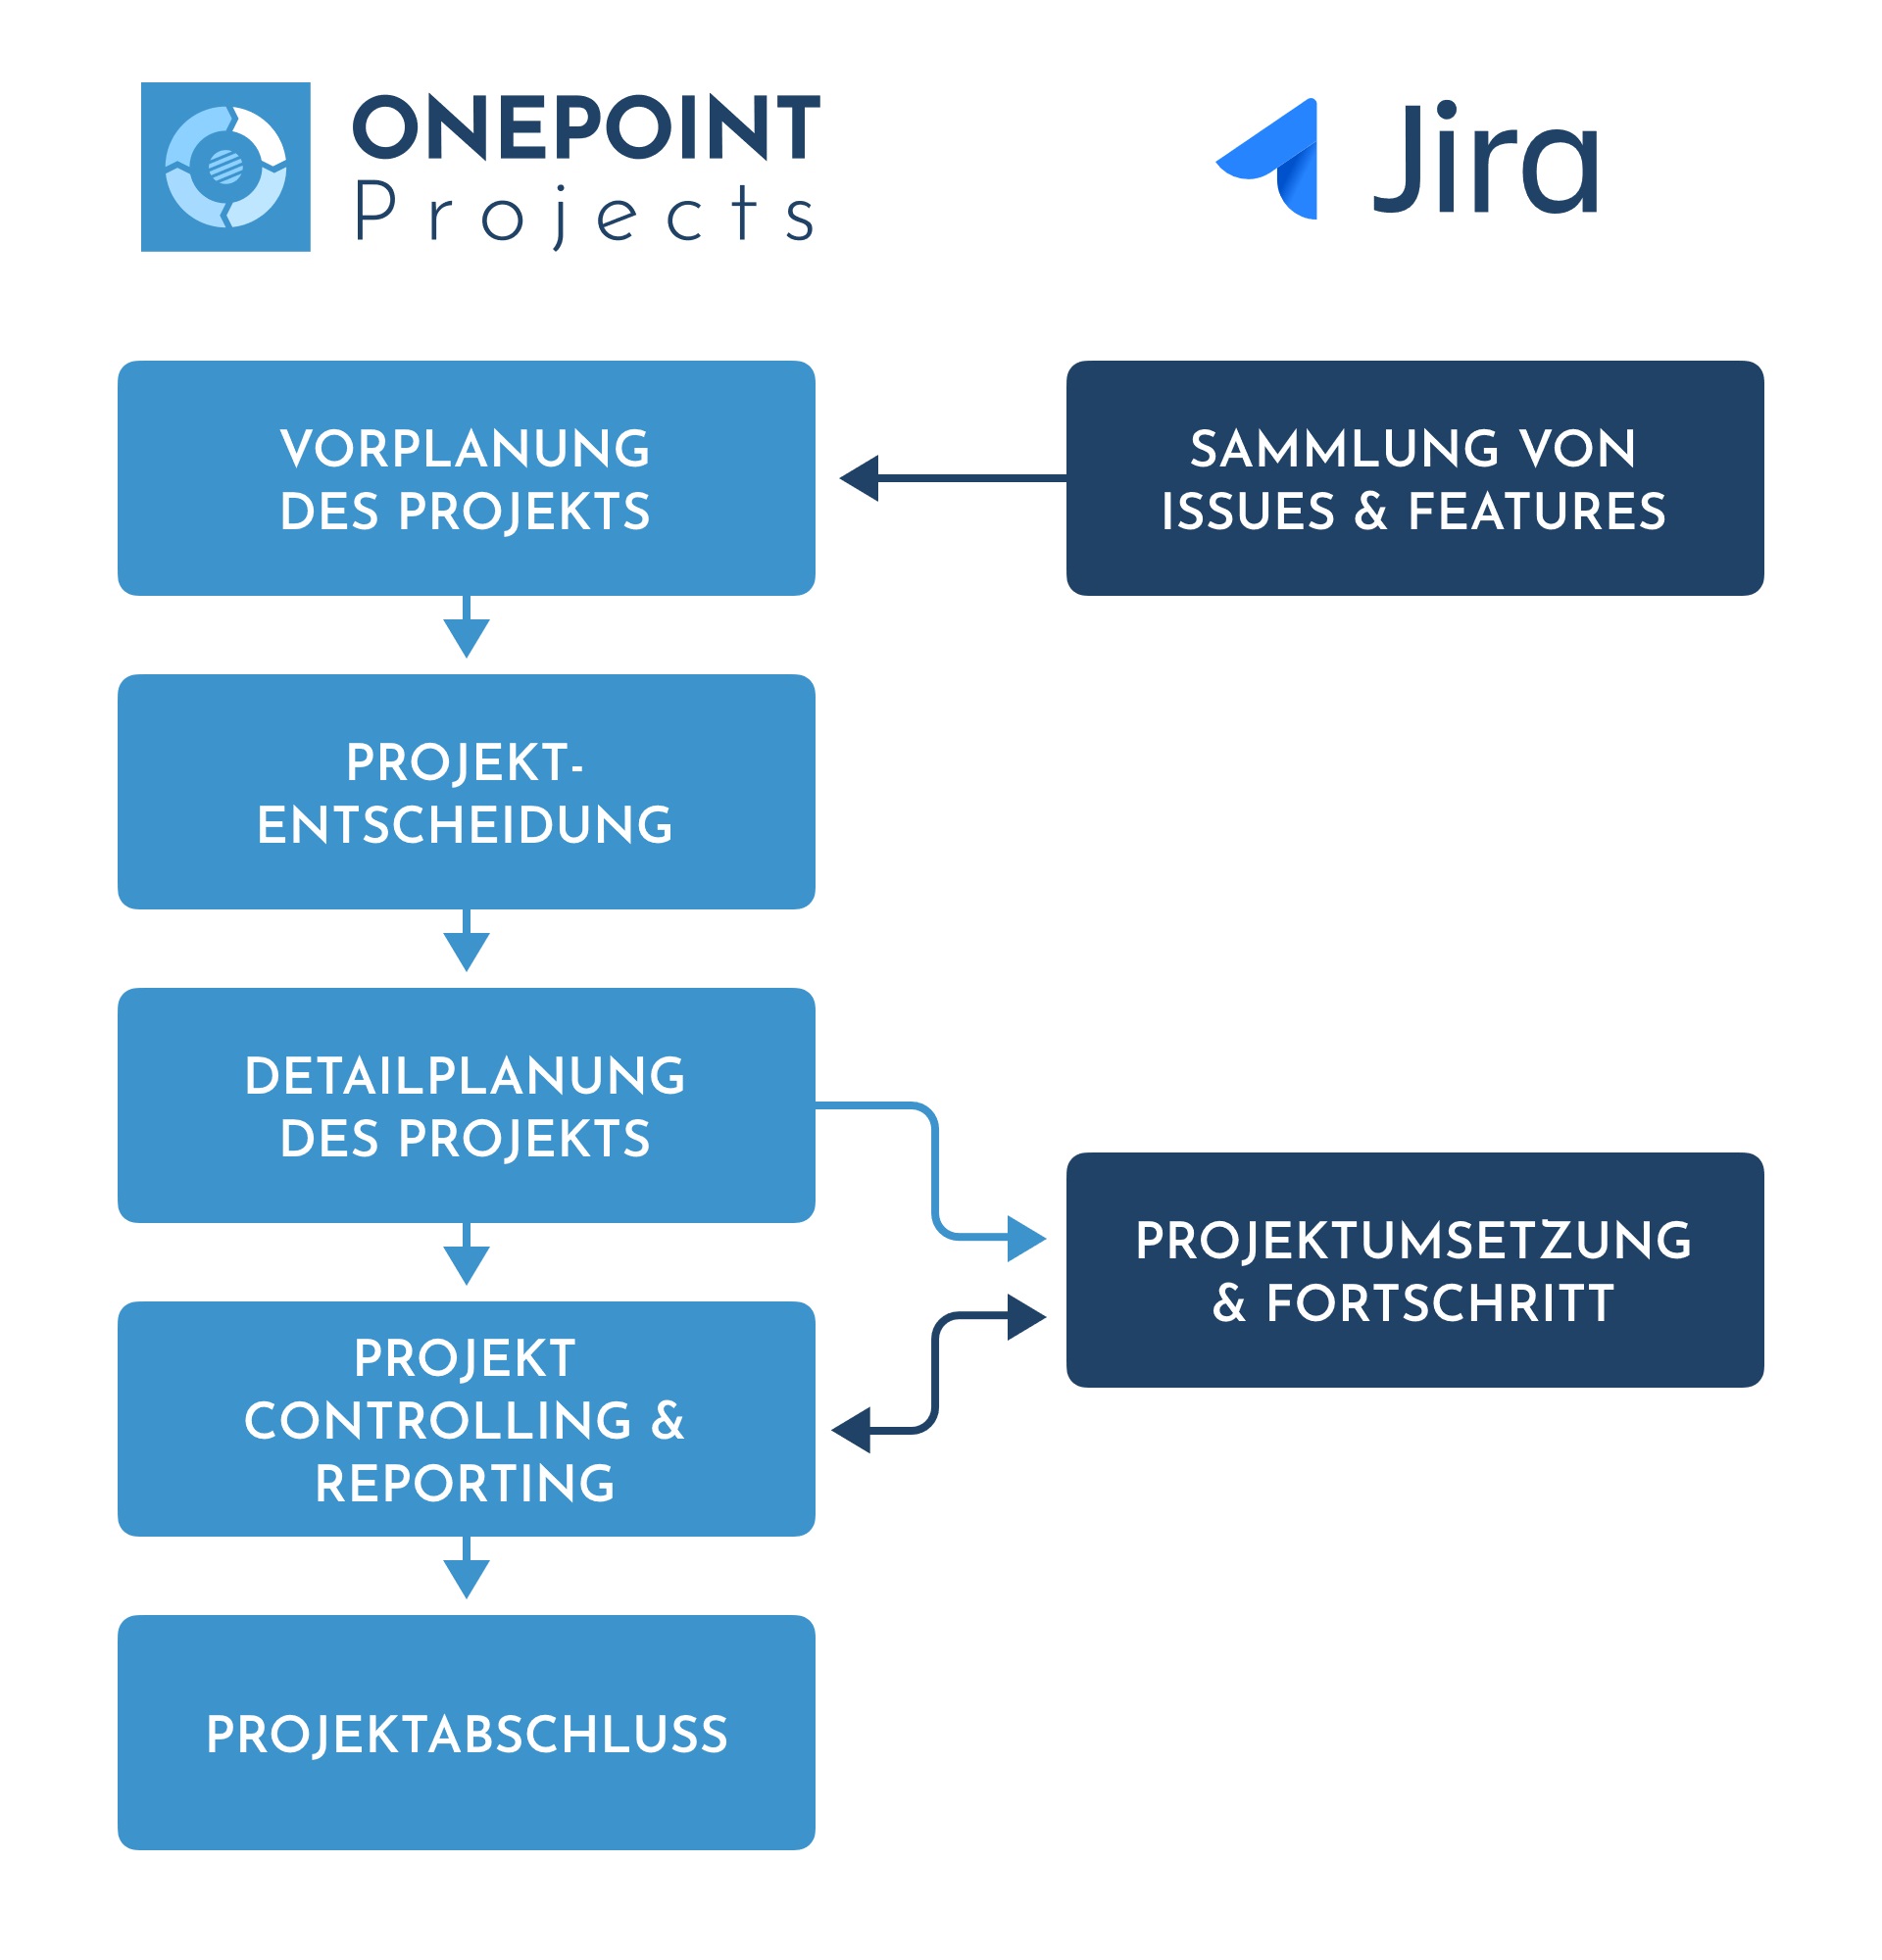 Neben eingebauten Funktionen für agile Methoden wird auch Jira unterstützt